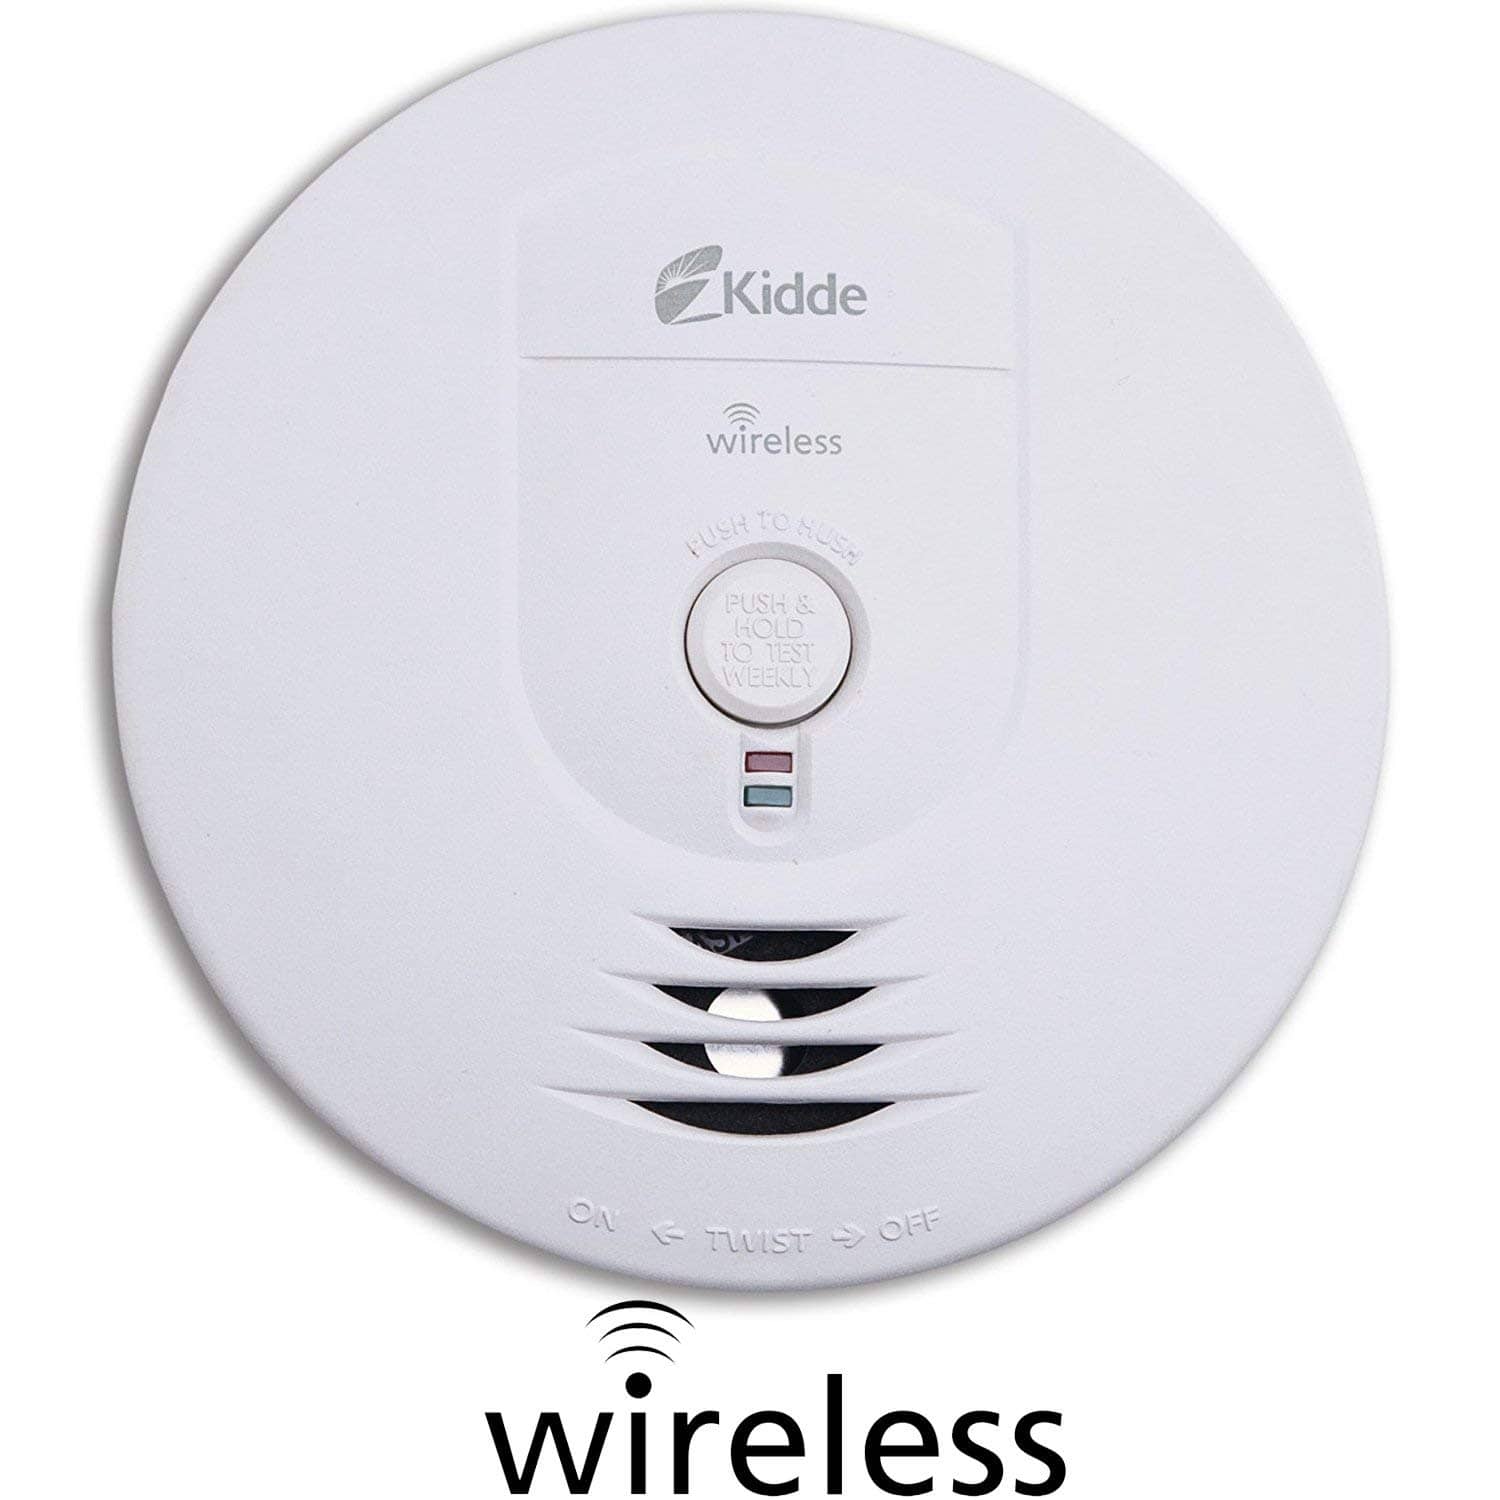 Kidde 21026044 Wireless 